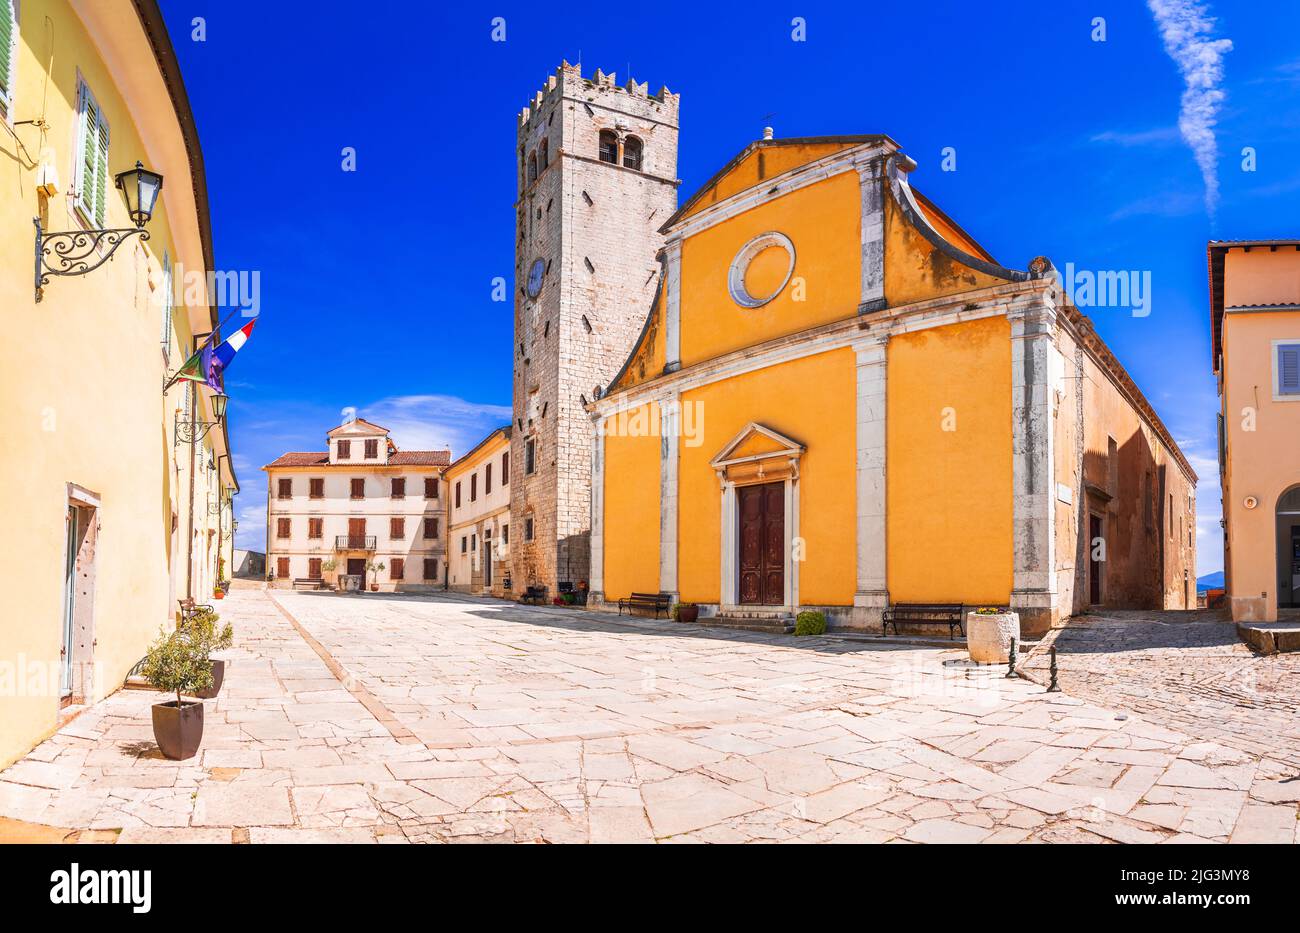 Motovun, Kroatien. Malerische historische Stadt Motovun Hauptplatz, Reise-Ziel im Landesinneren Istrien Region von Kroatien. Stockfoto